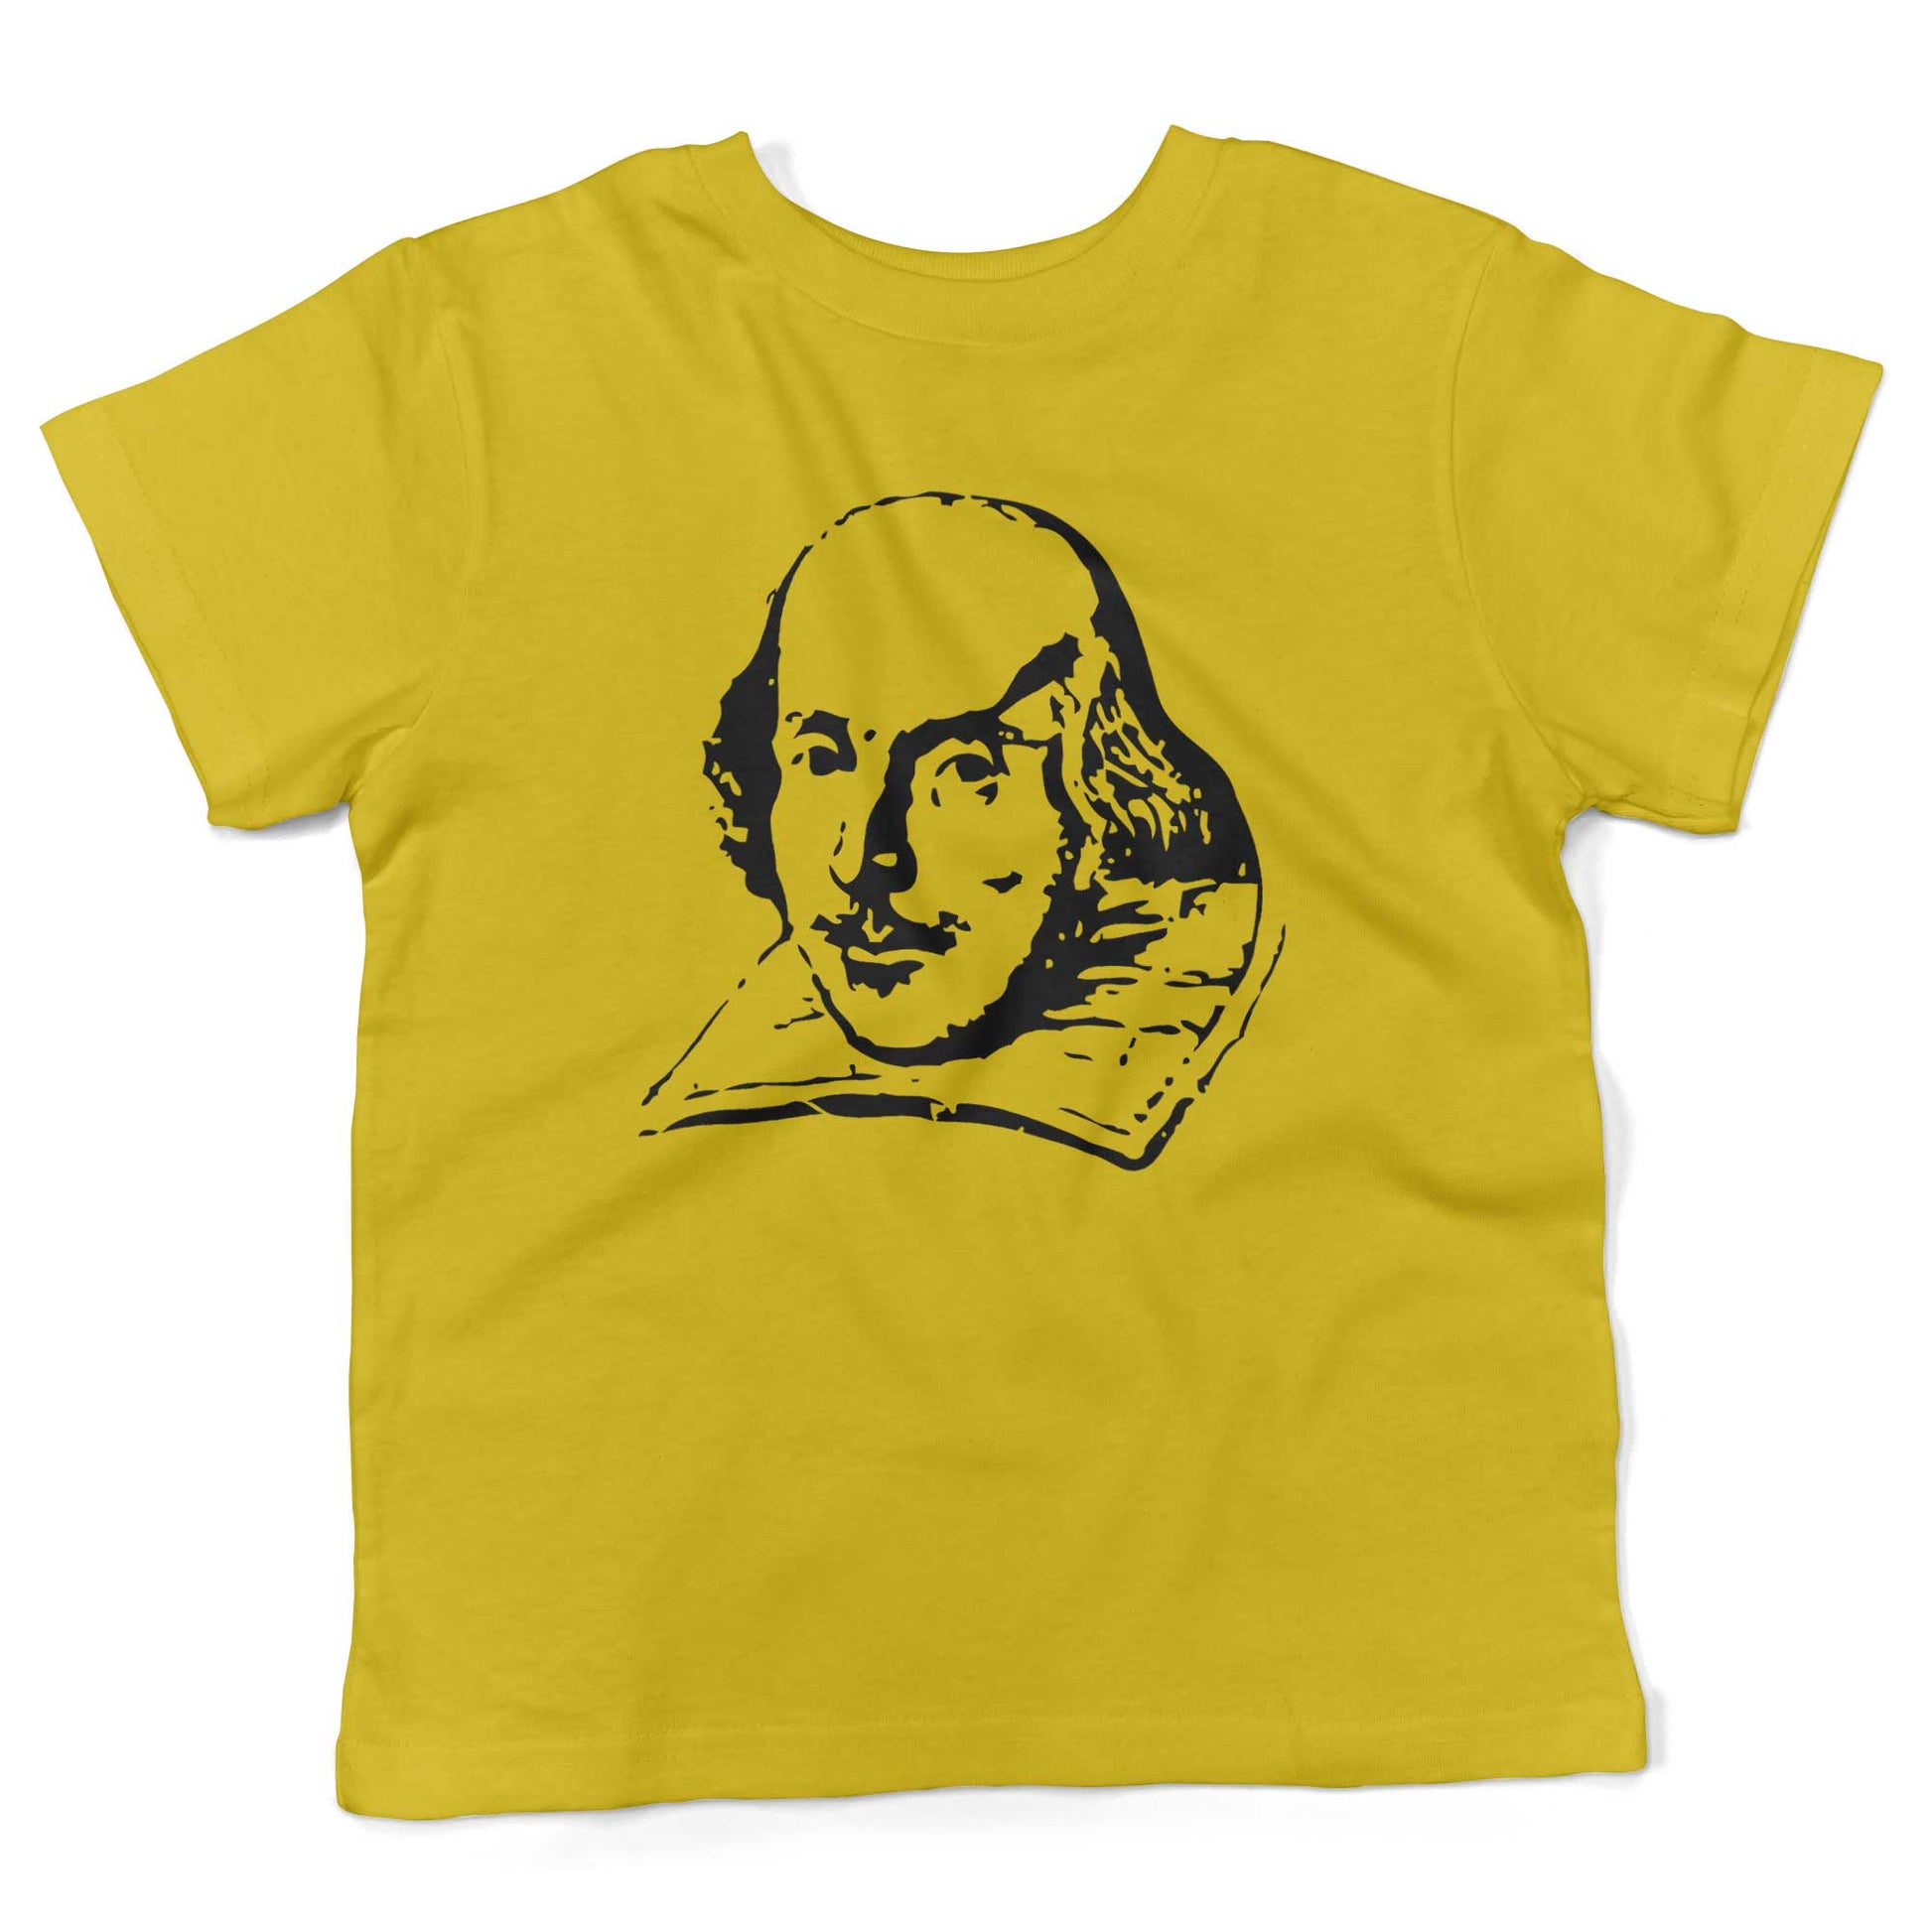 Shakespeare Toddler Shirt-Sunshine Yellow-2T